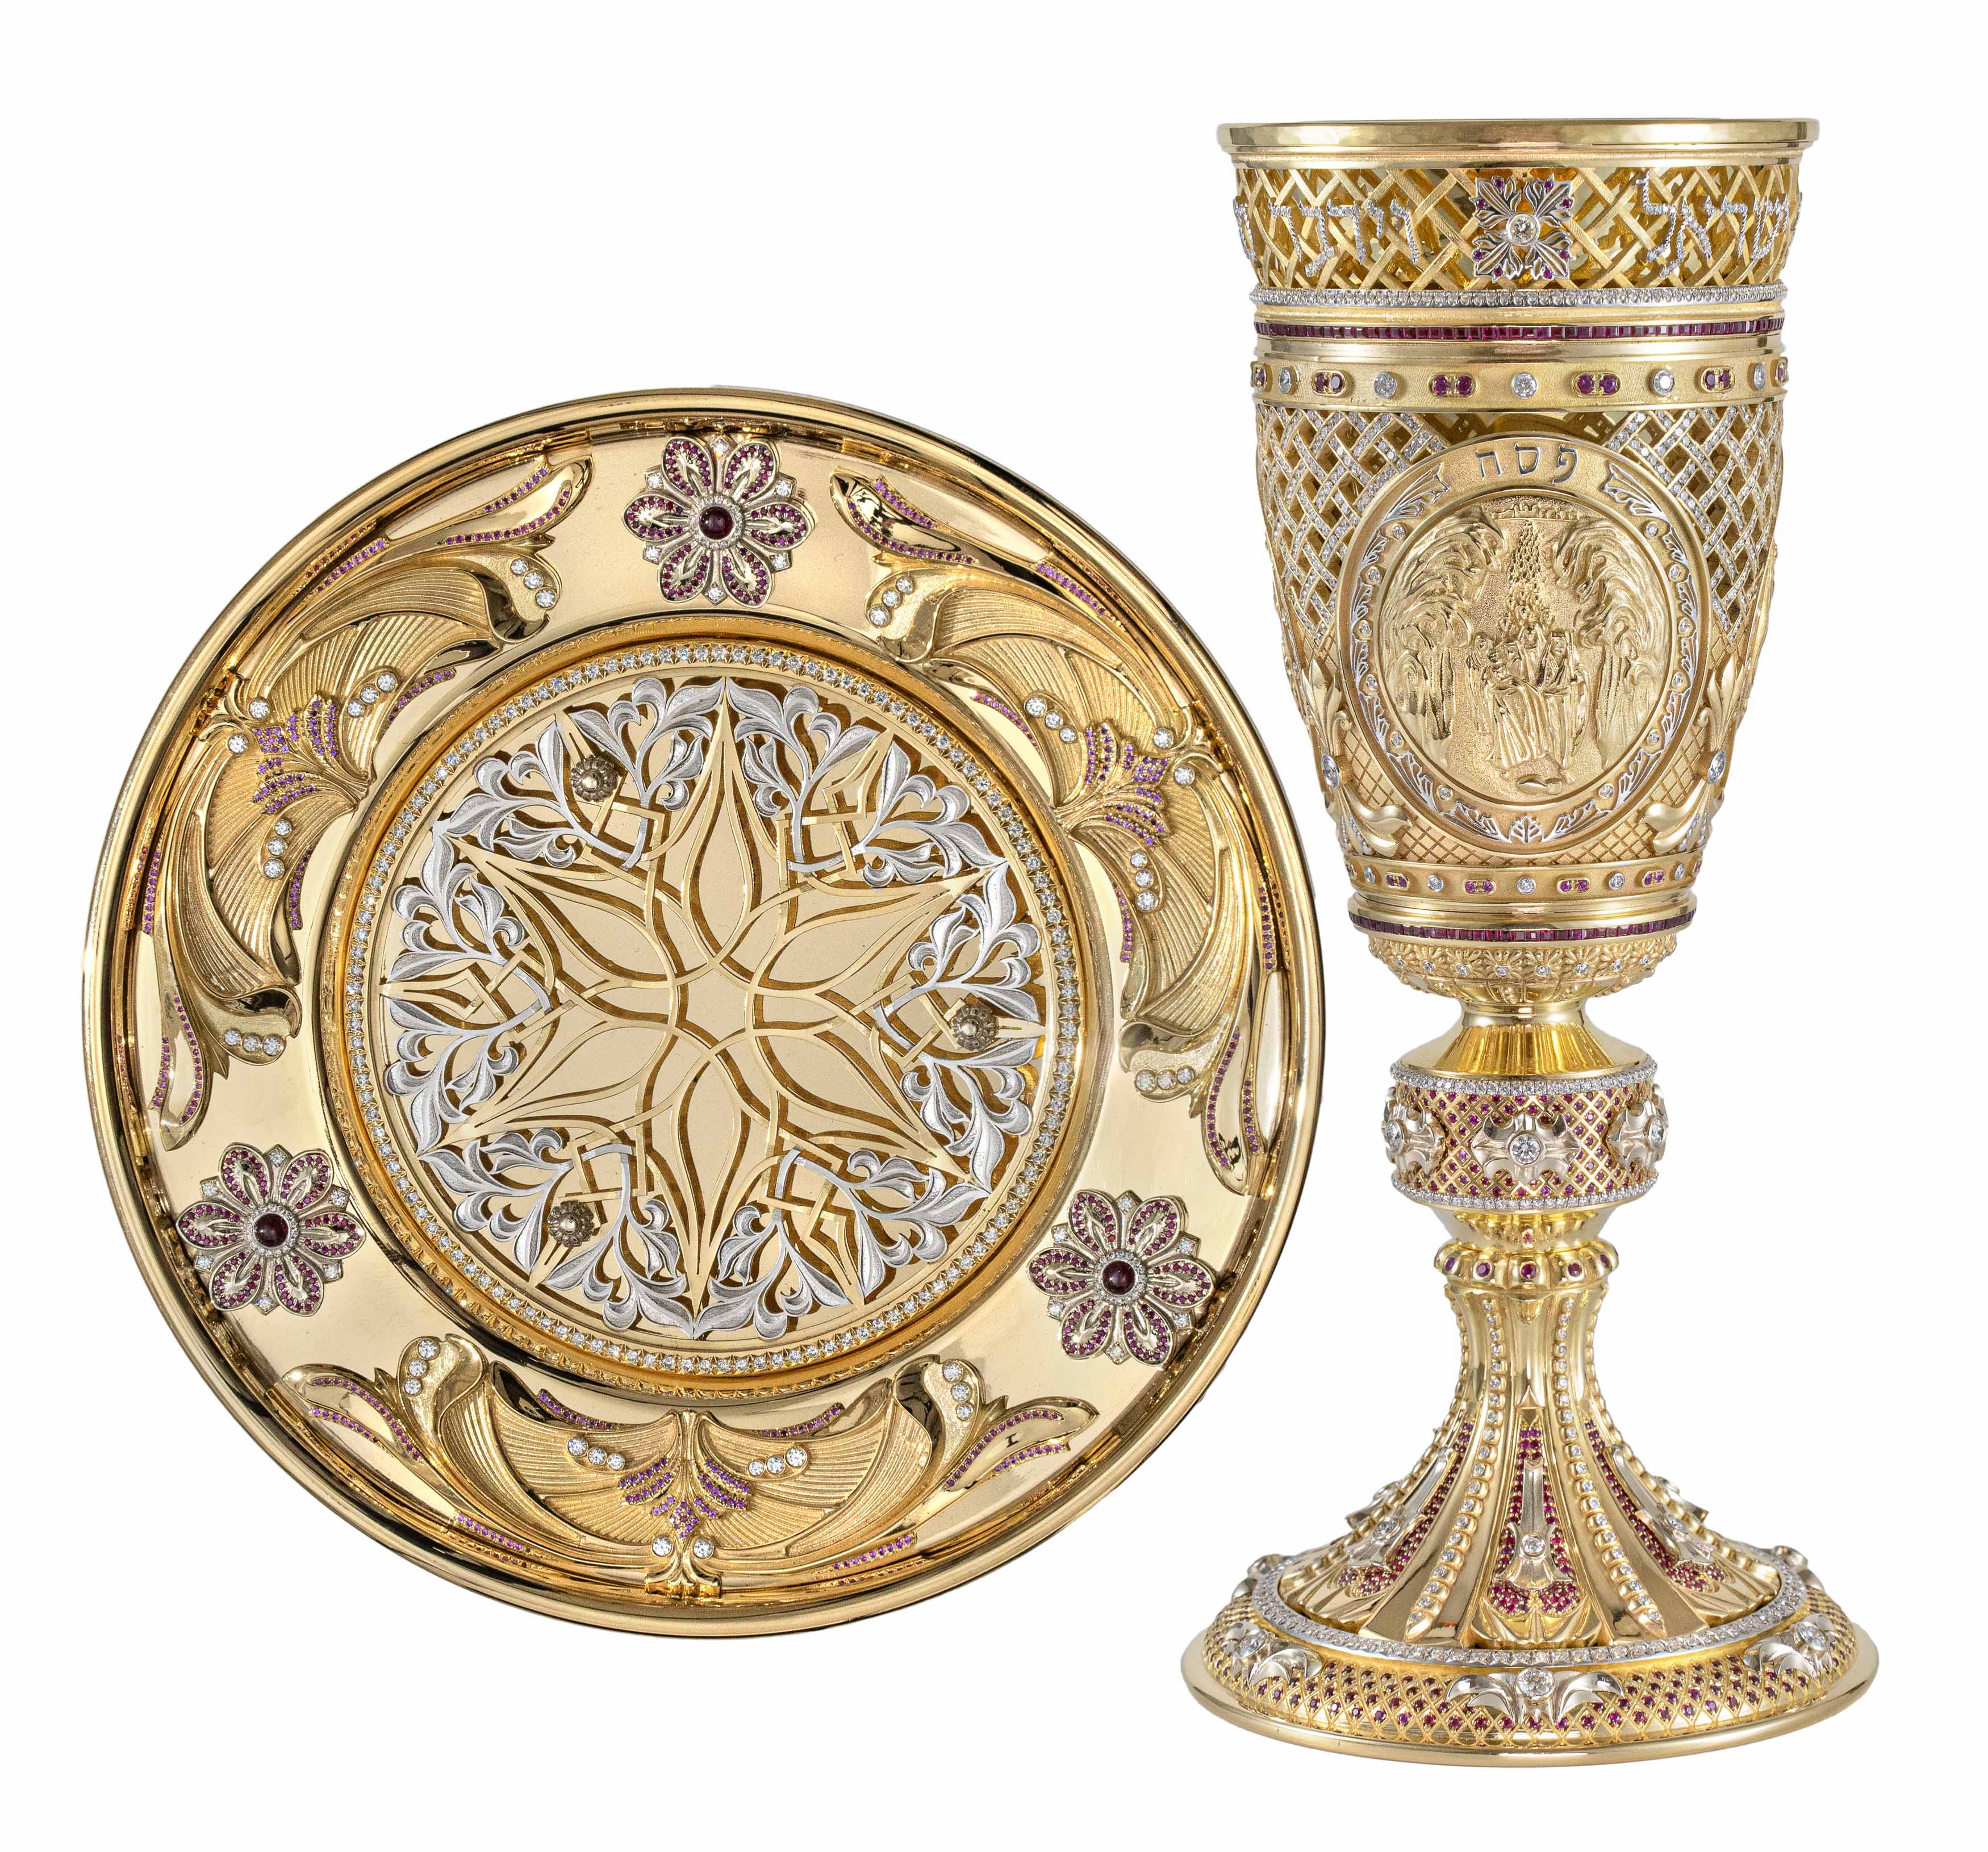 Golden Elijah's Goblet with the Pilgrimage Holidays